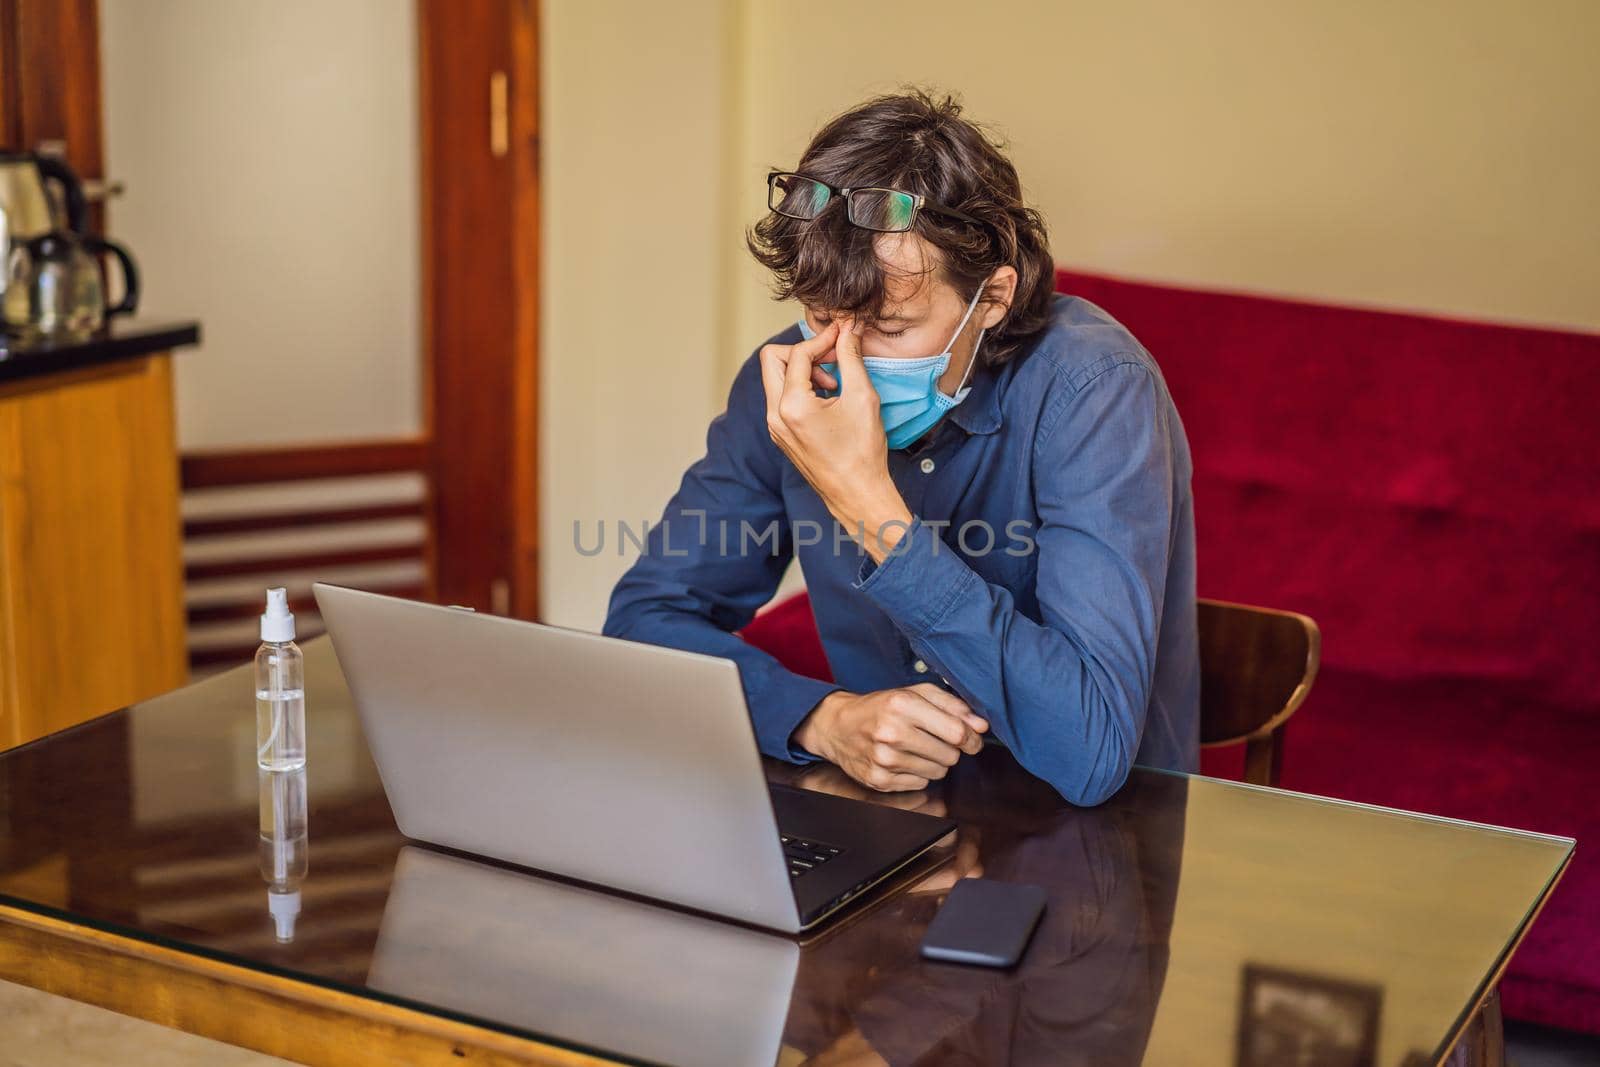 Coronavirus. Man working from home wearing protective mask. quarantine for coronavirus wearing protective mask. Working from home.